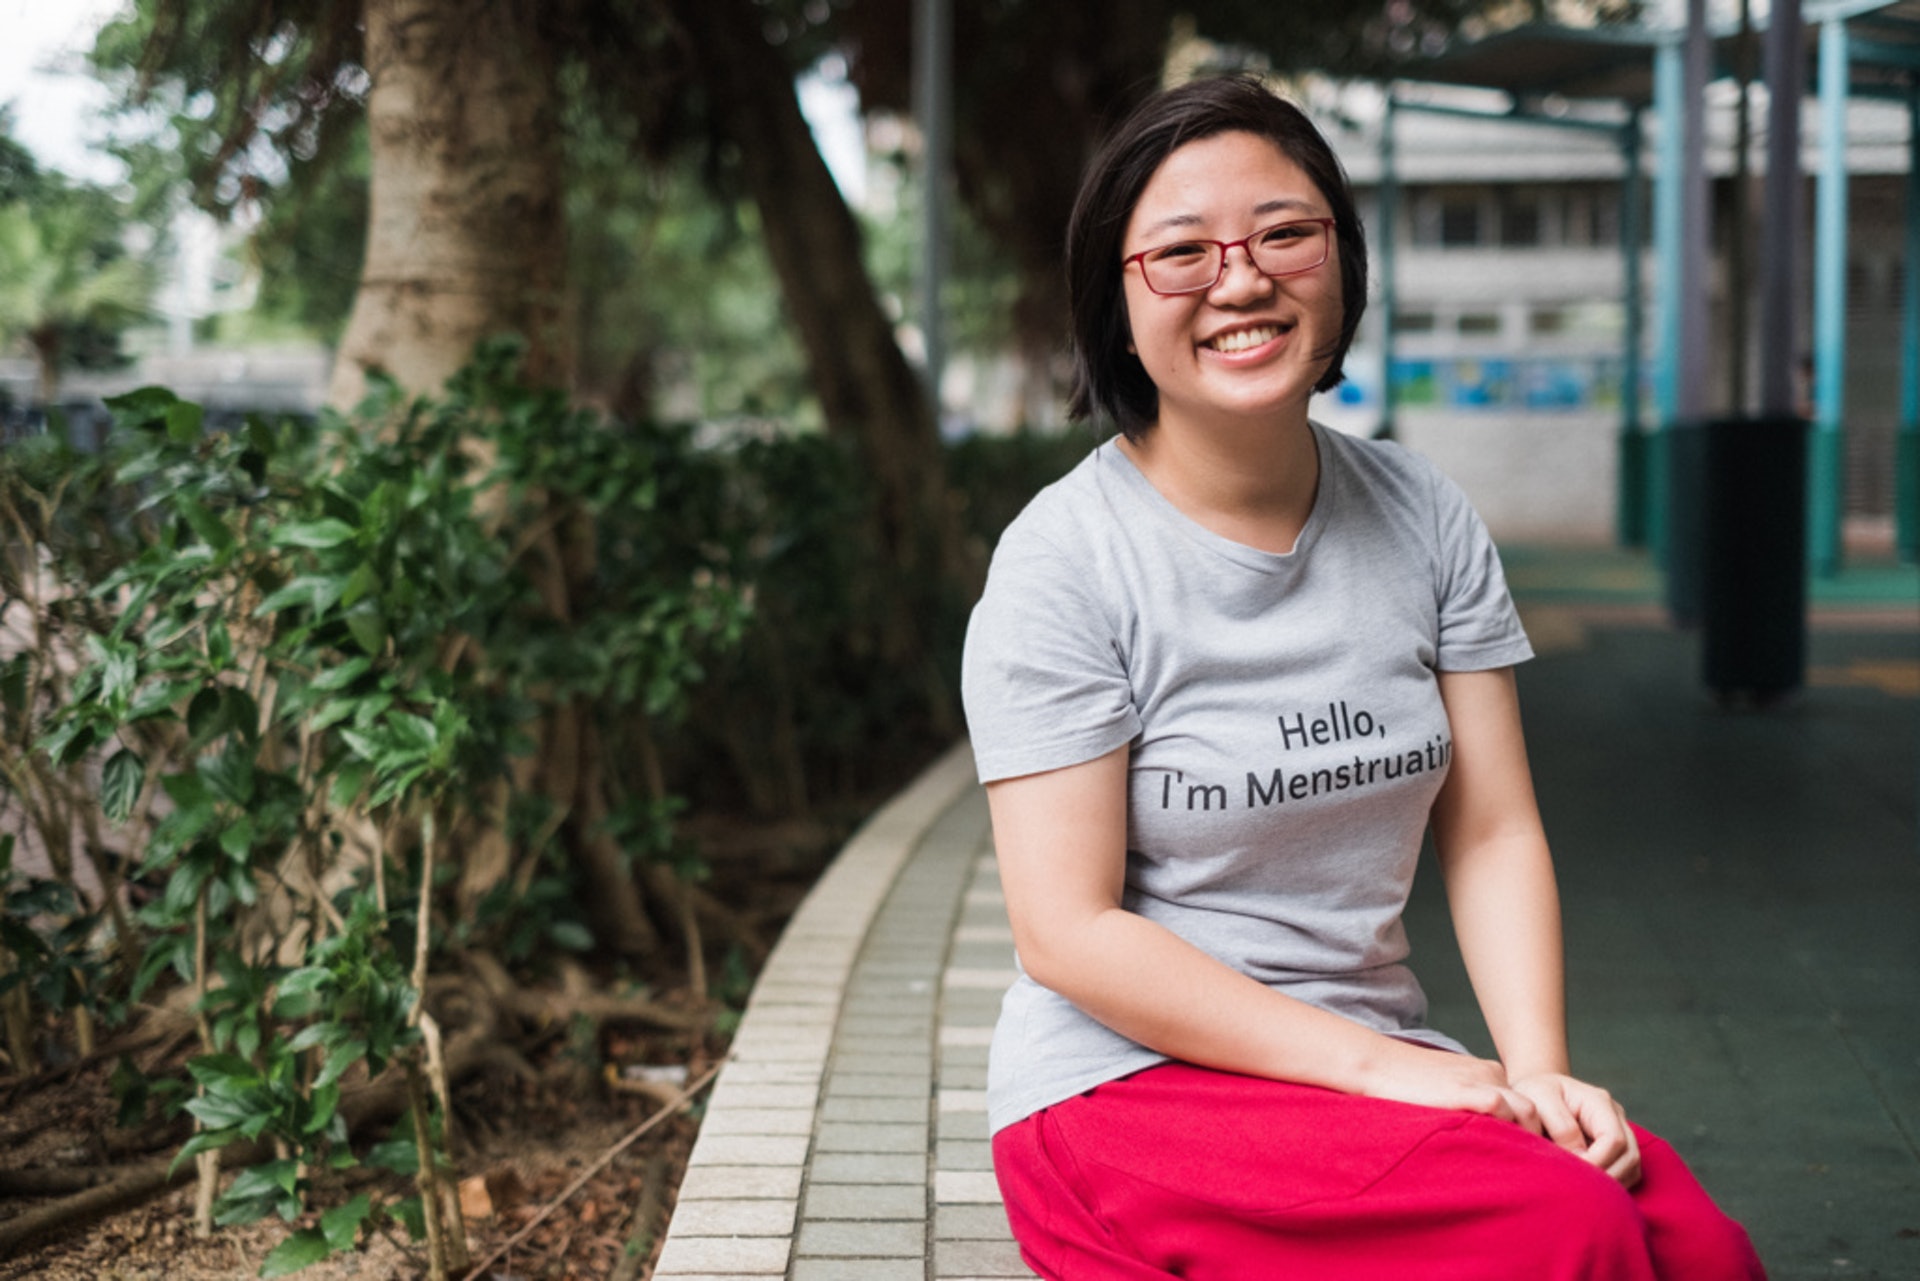 「香港基層婦女的生活環境比較不一樣，她們可能住在劏房、或者礙於華人保守文化，難以與身邊人傾談月經問題。」Zoe說。